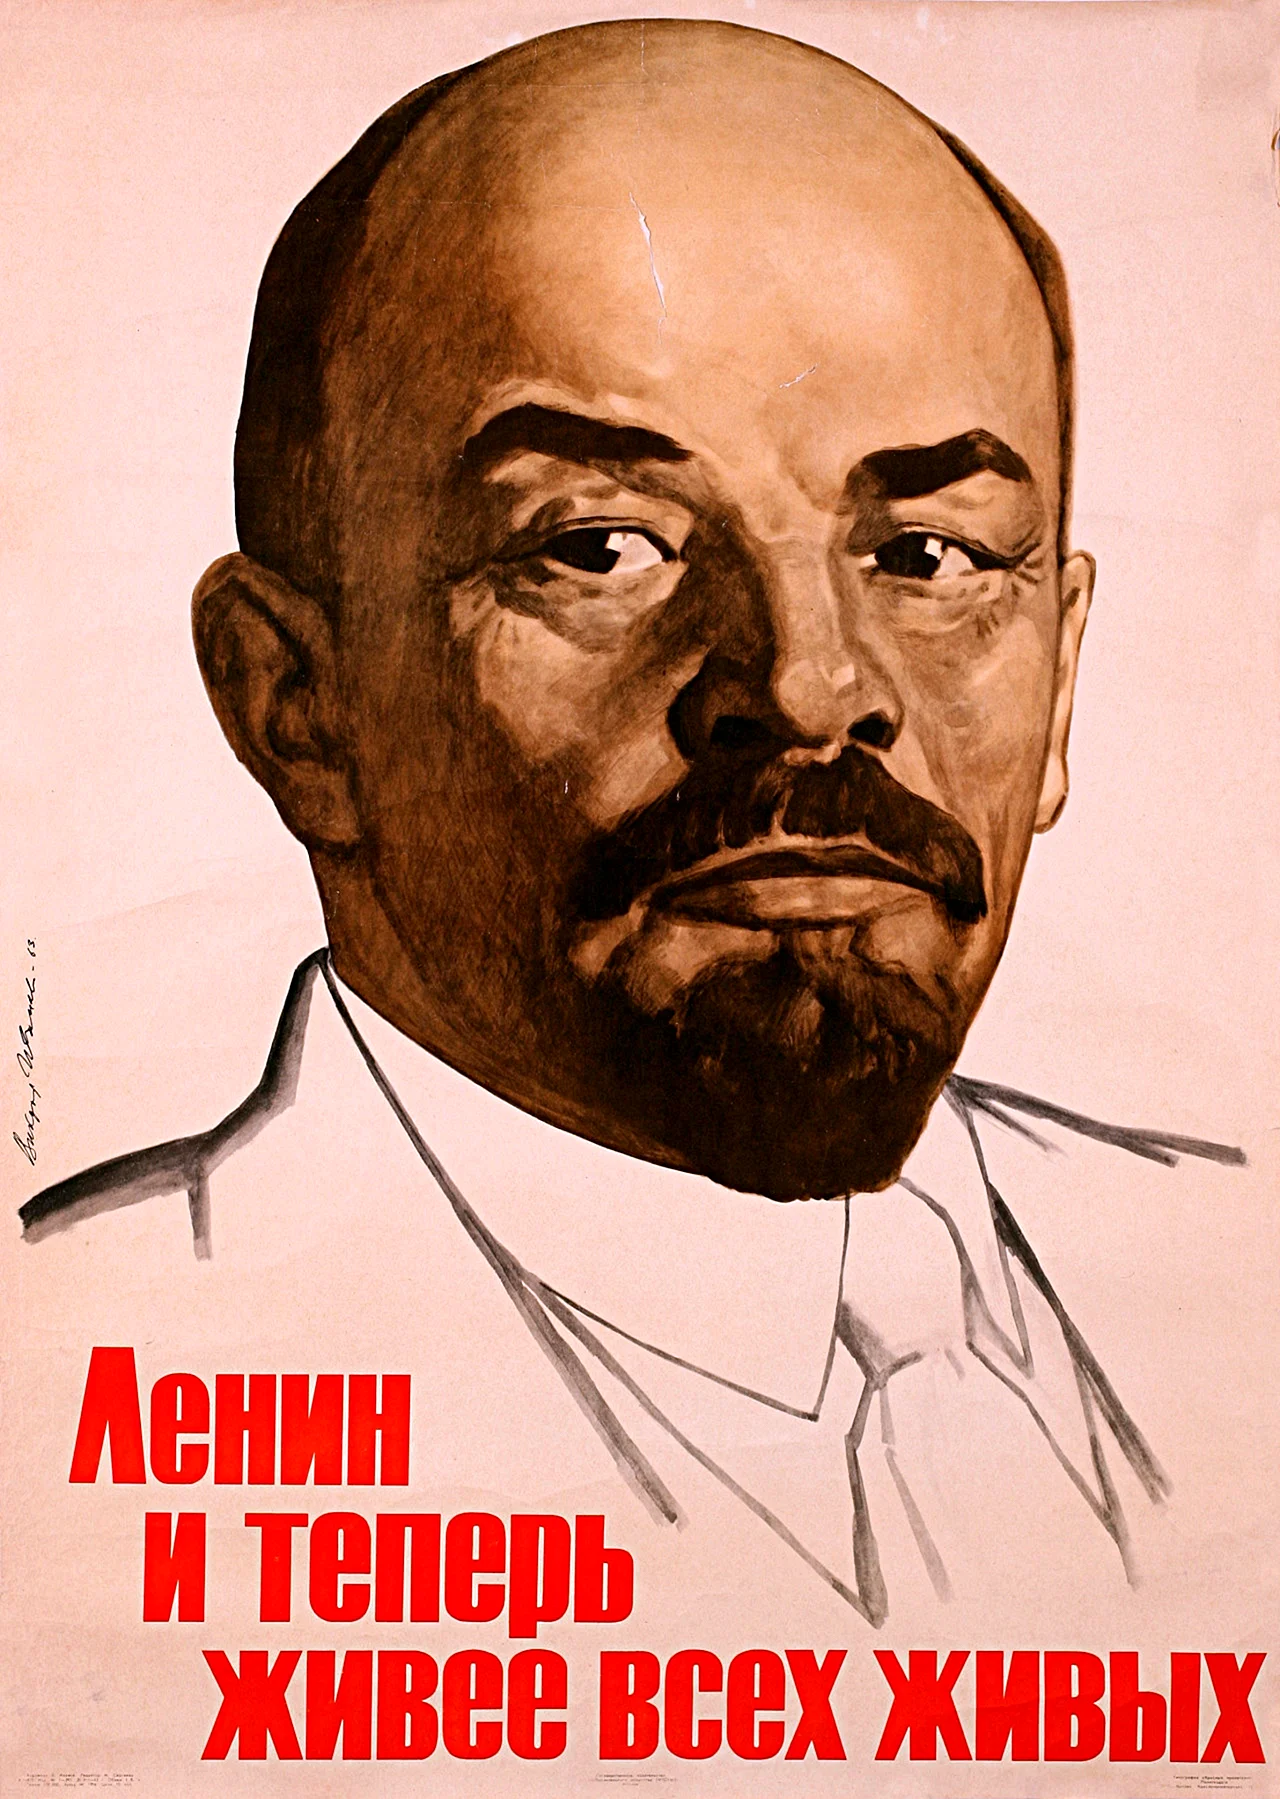 Плакат Ленин жил Ленин жив Ленин будет жить